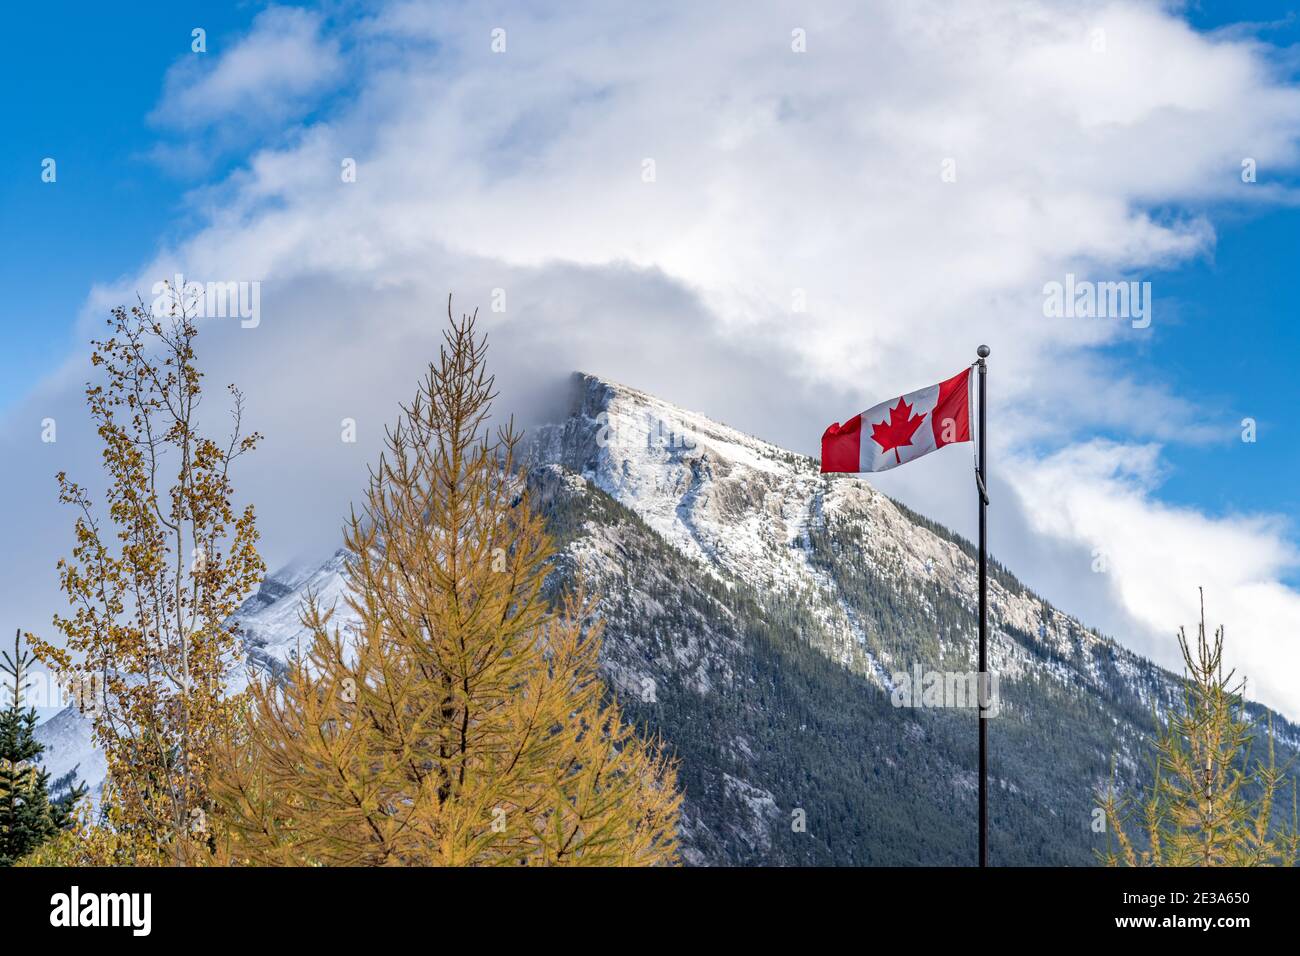 National Flag of Canada mit Mount Rundle Bergkette an einem verschneiten sonnigen Tag. Banff National Park, Canadian Rockies. Stockfoto